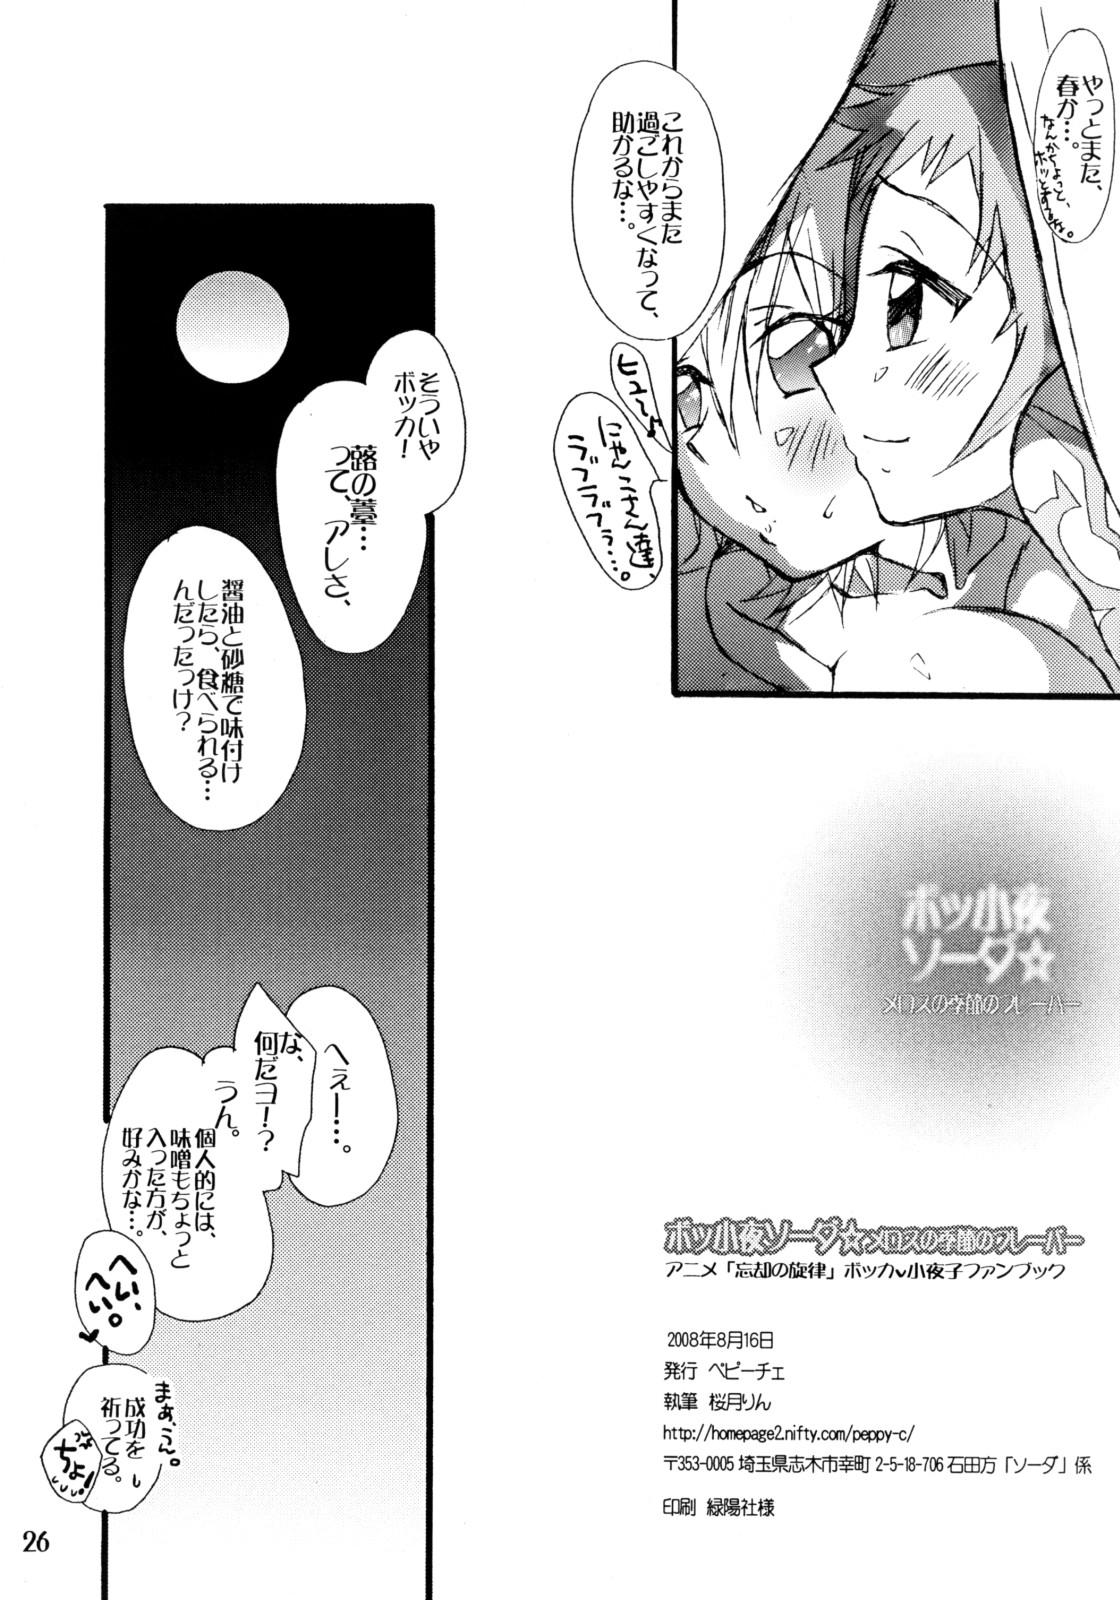 Mama BoSsayo Soda☆Melos no Kisetsu no Flavor - The melody of oblivion Dicksucking - Page 25